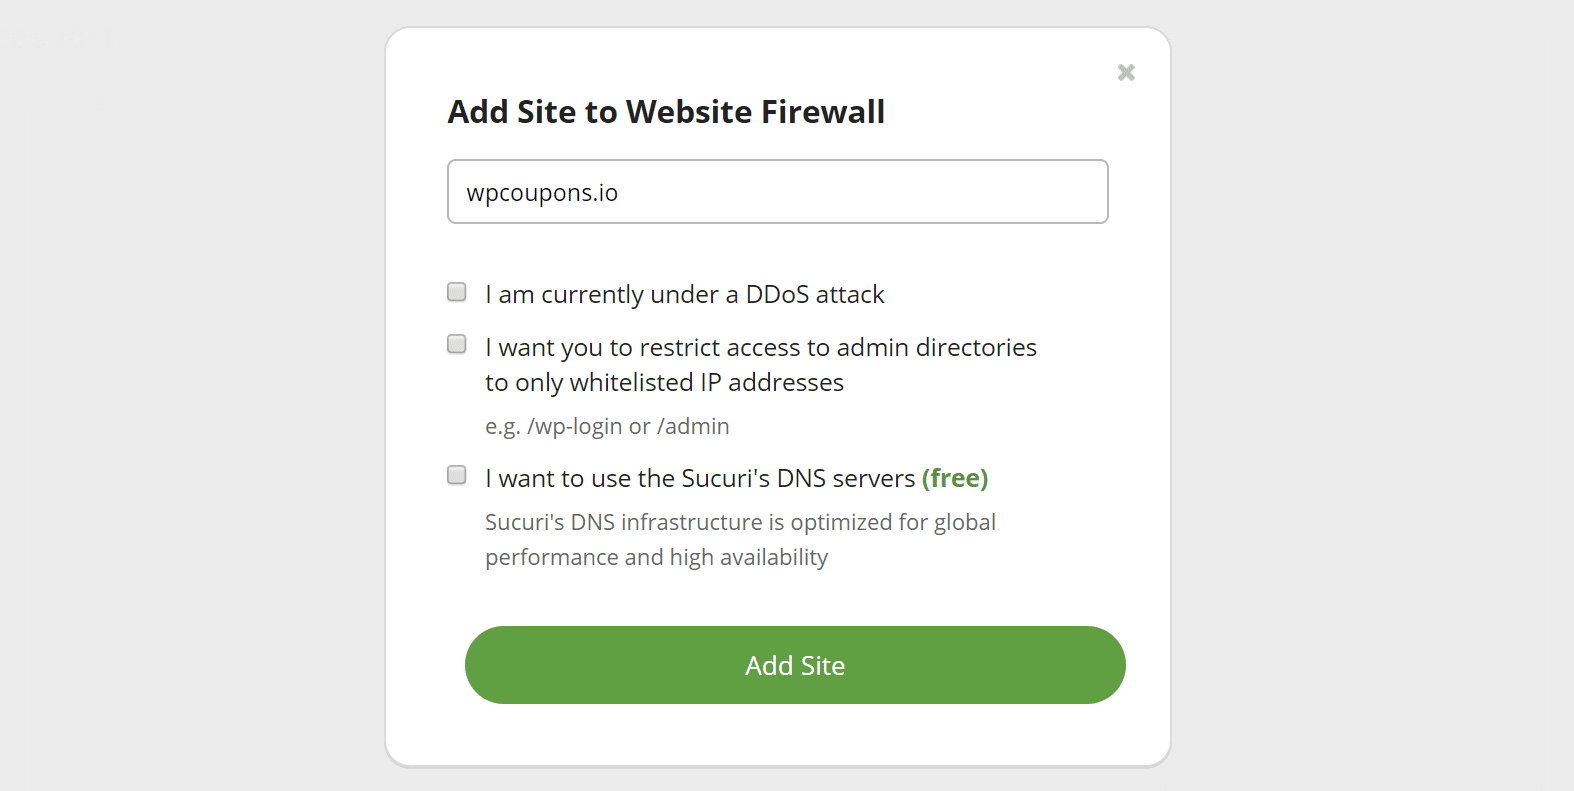 Adicionar firewall ao website